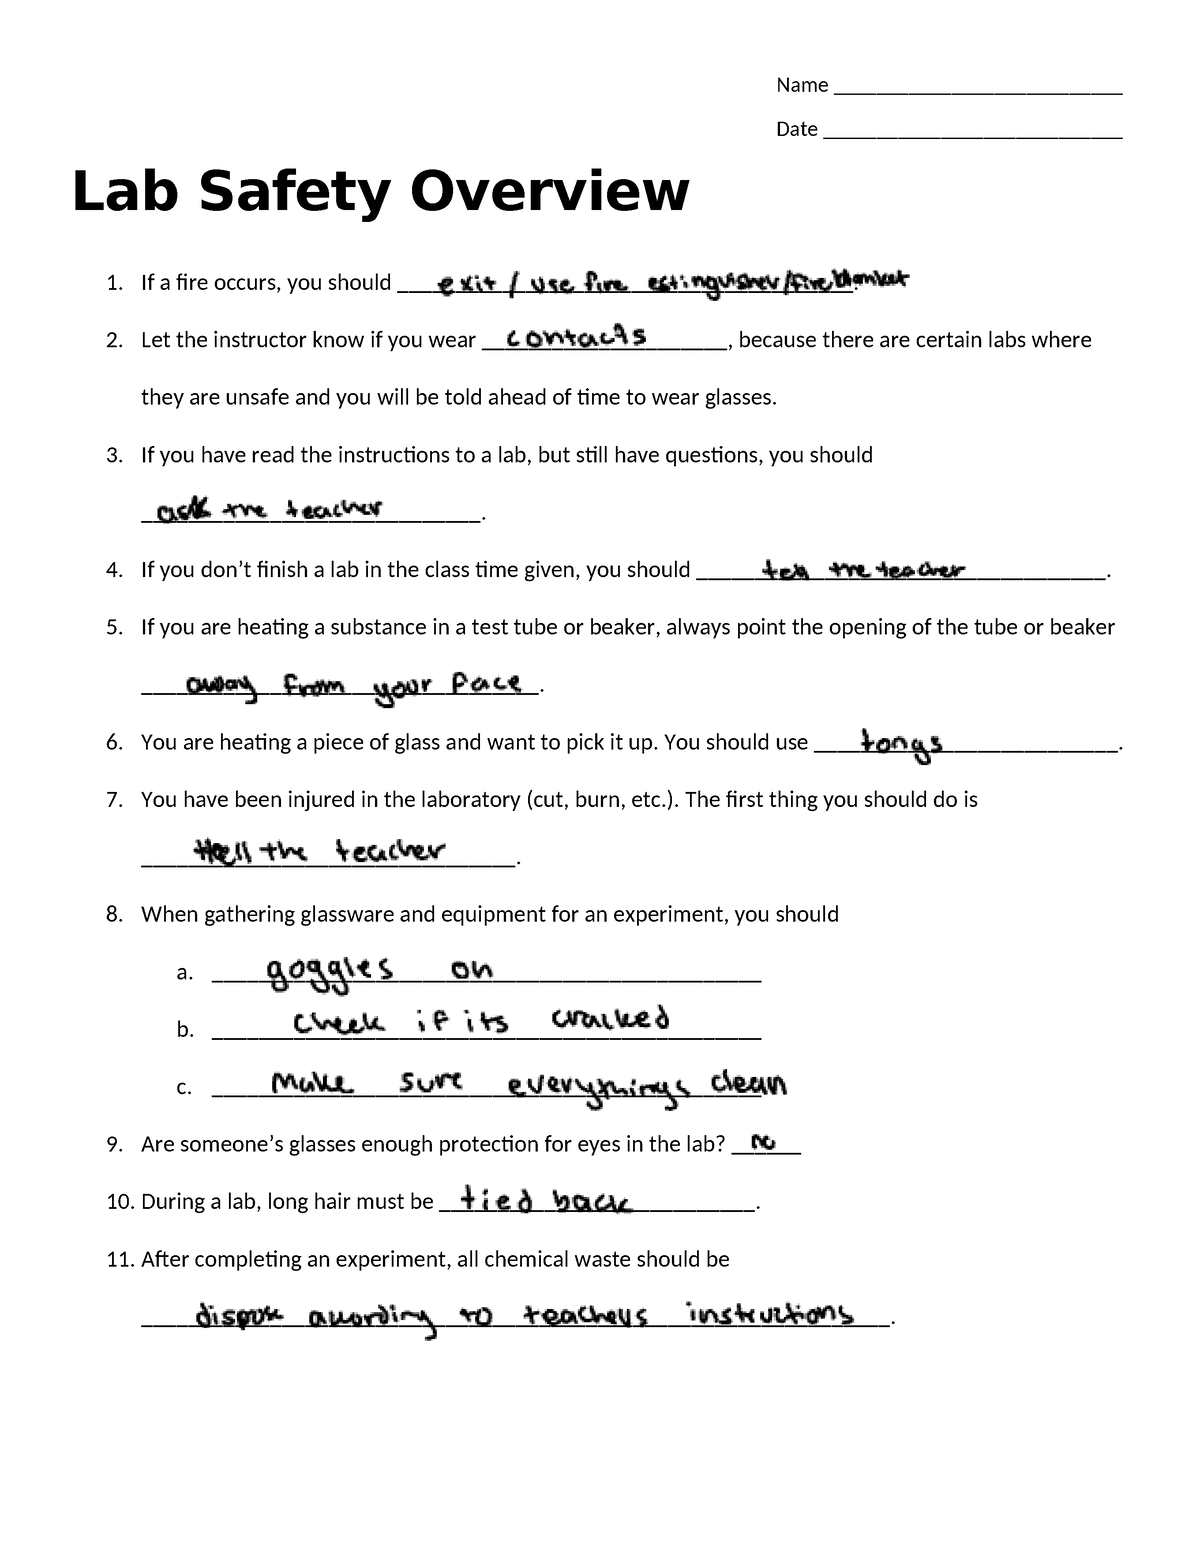 Lab safety work - Nhjjnjkl.. - Name ___________________________ Date